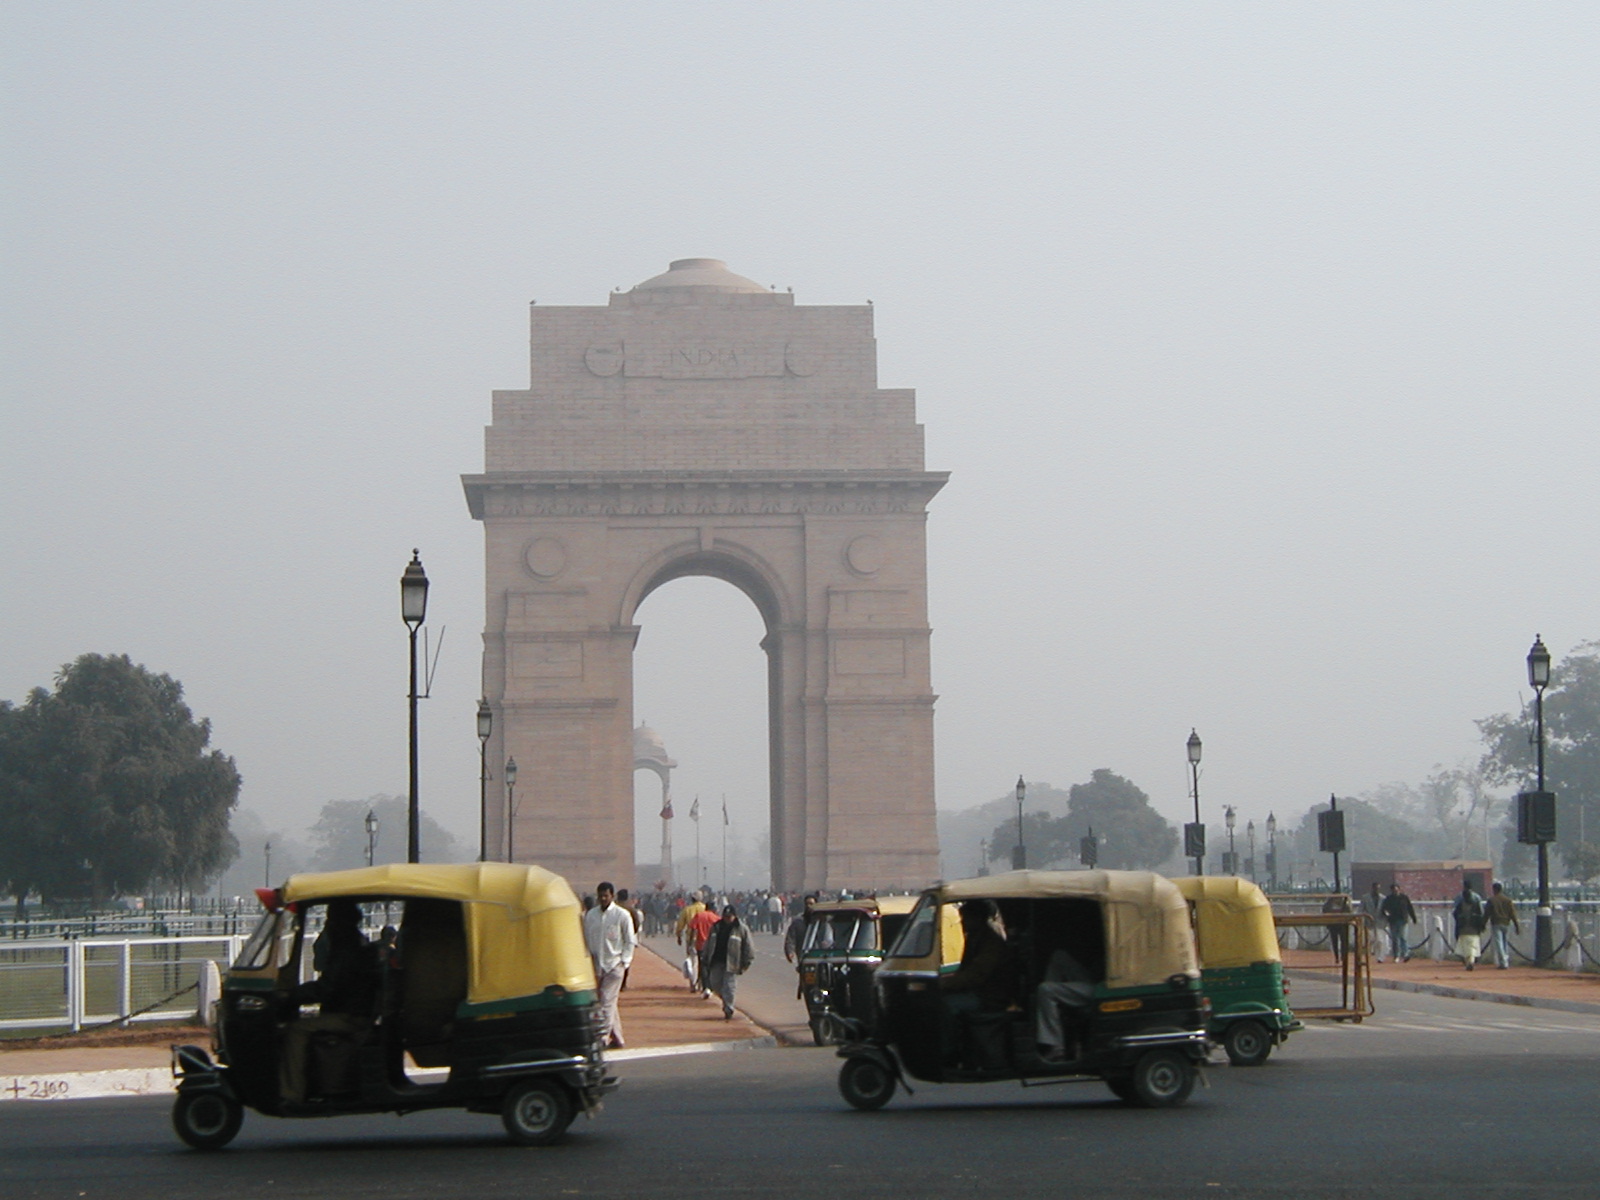 http://4.bp.blogspot.com/-90GpBHKWNA4/TudMhVEO8NI/AAAAAAAAGFk/ygGQAI01f-s/s1600/India+Gate++Delhi+Psuperos3.jpg